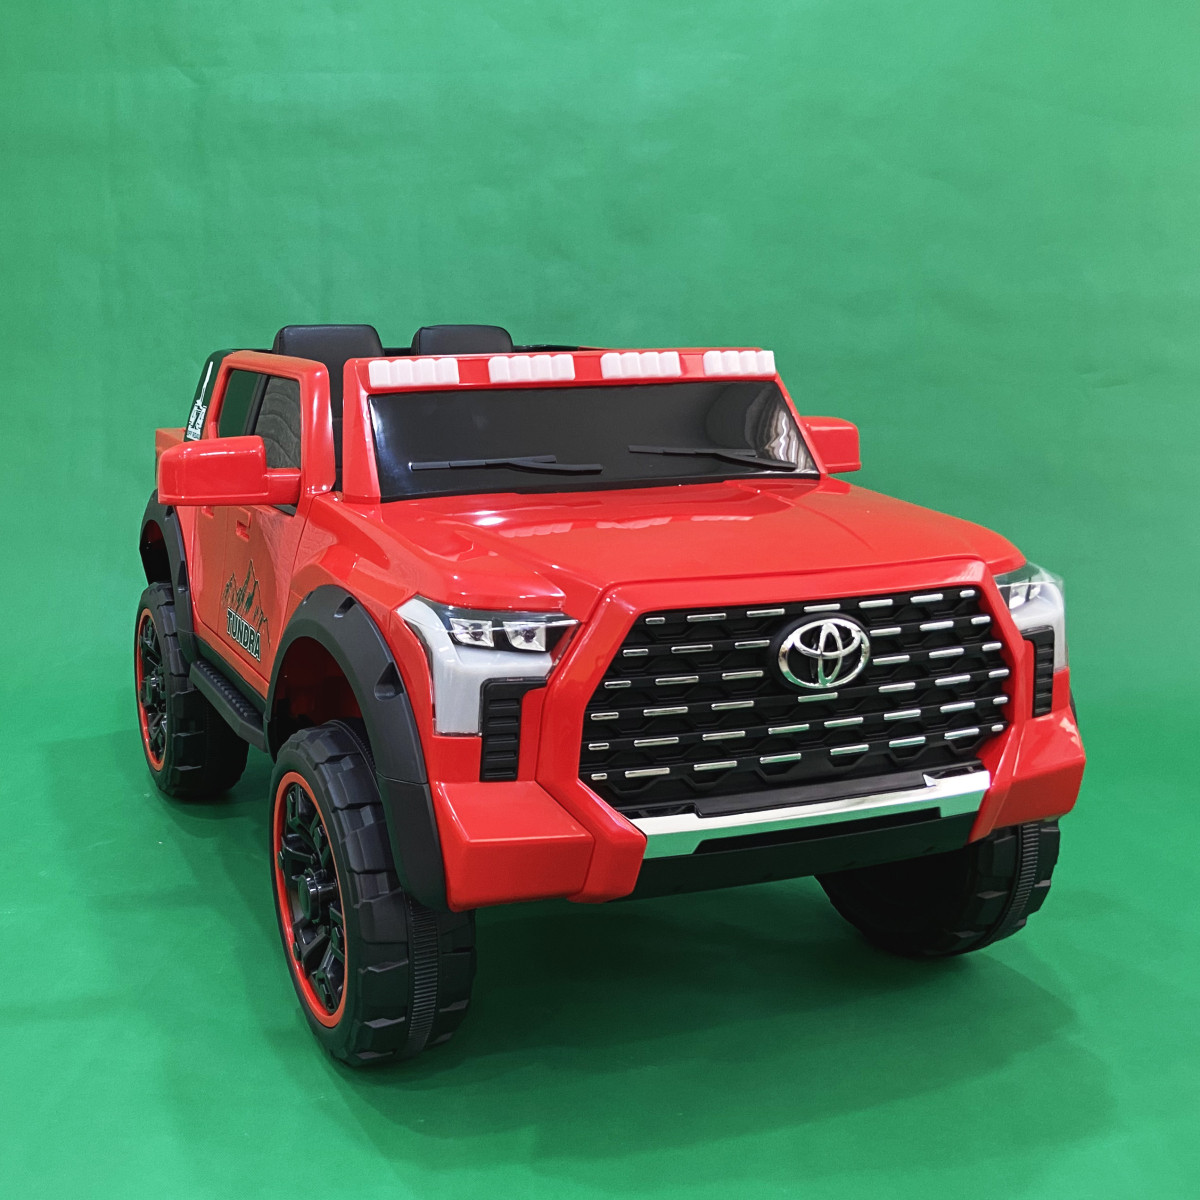 Дитячий повнопривідний електромобіль моделі Toyota Tundra Red / Червоний